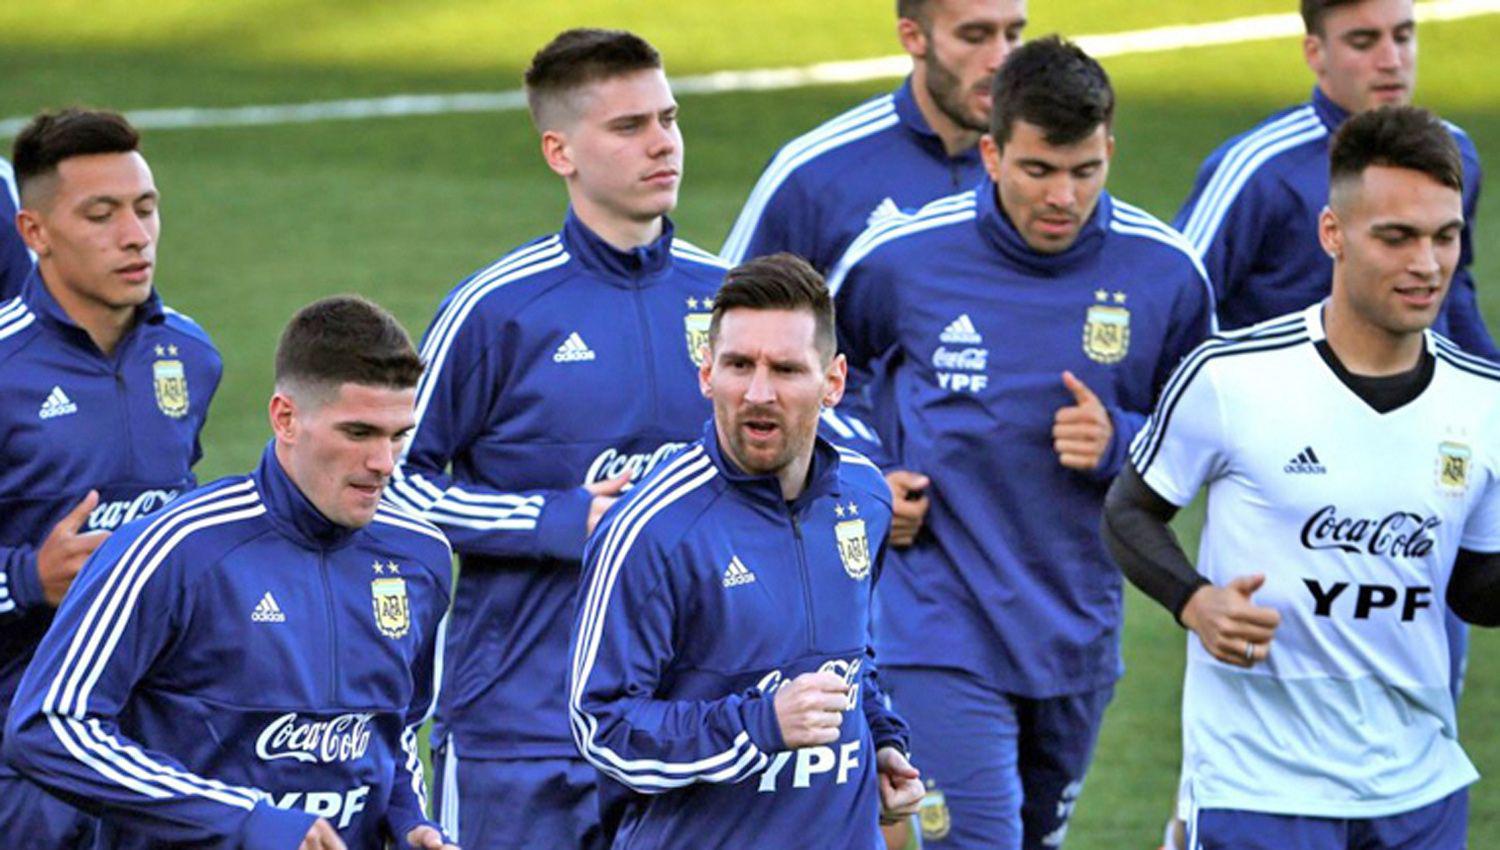 La Argentina vs Uruguay el 26 de marzo a las 21